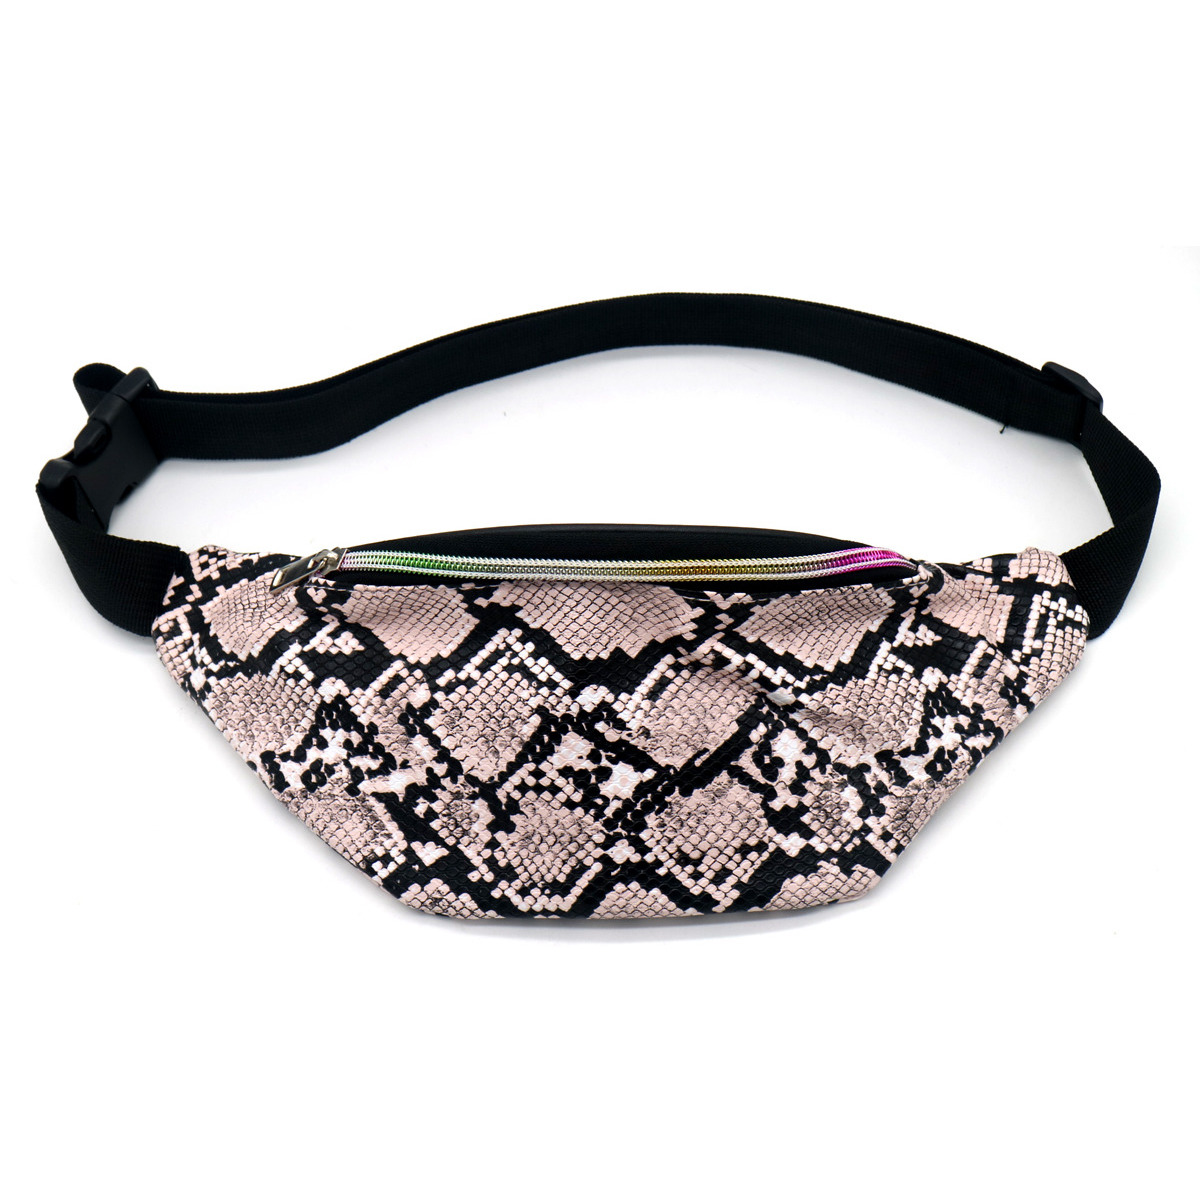 Hip heuptasje-fanny pack-schoudertasje zwart-roze slangenprint dierenprint 32 cm nep leer